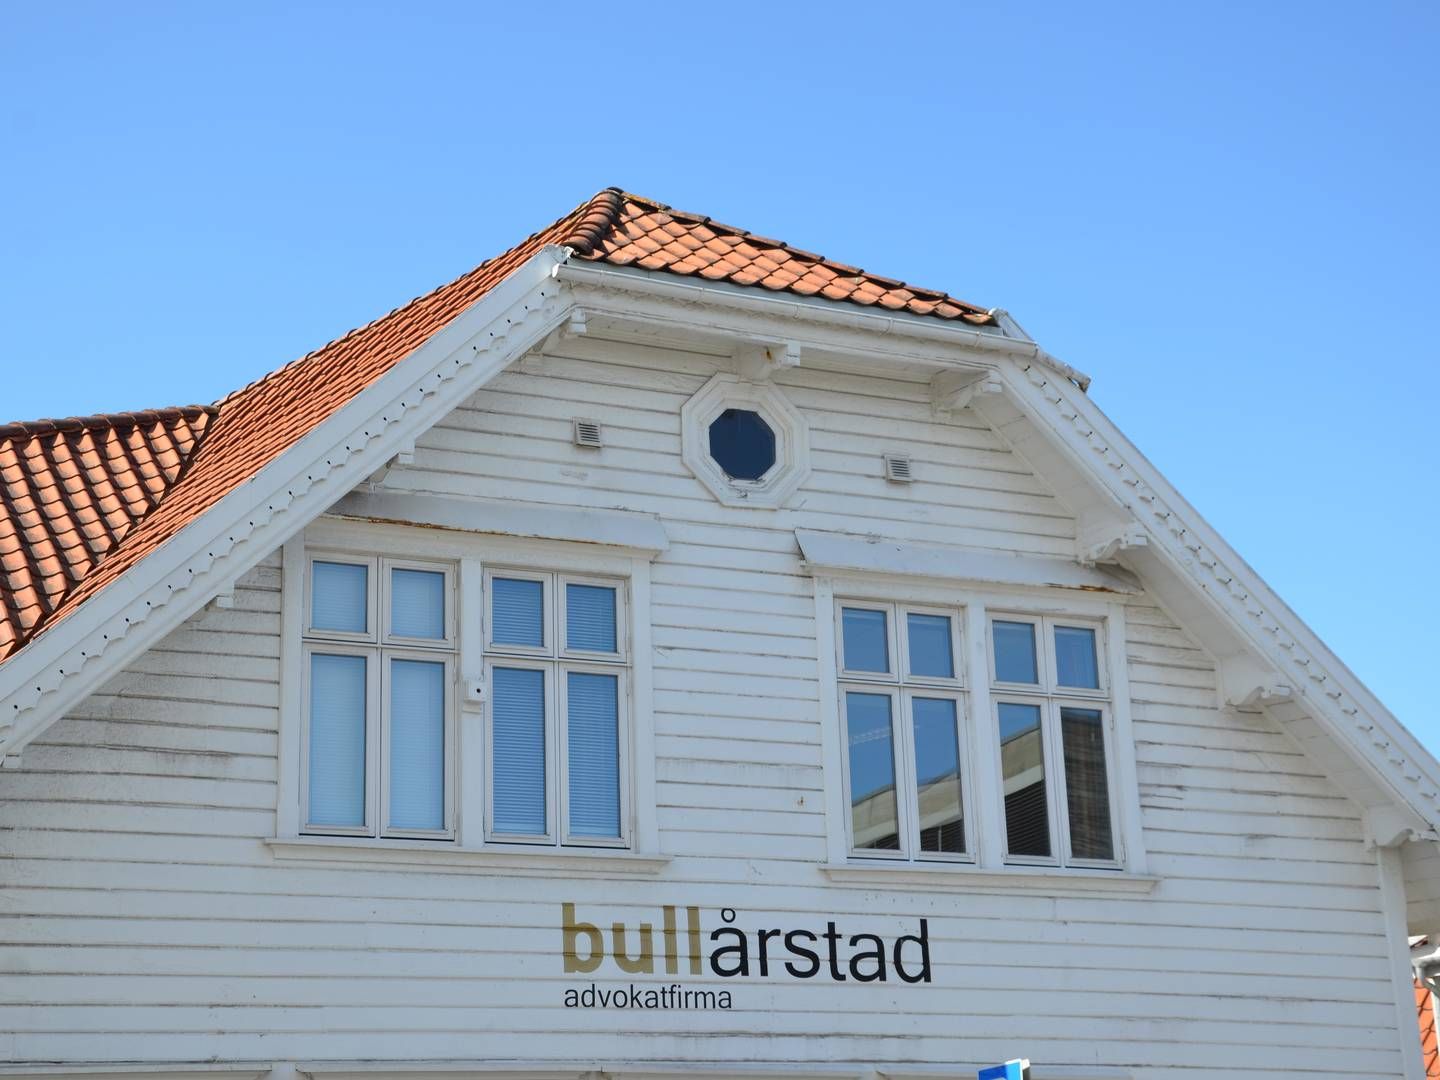 REAGERER: Bull Årstad reagerer på RSM Norges opptreden i forbindelse med fratredelsen. | Foto: Aleksander Simonsen Losnegård / AdvokatWatch